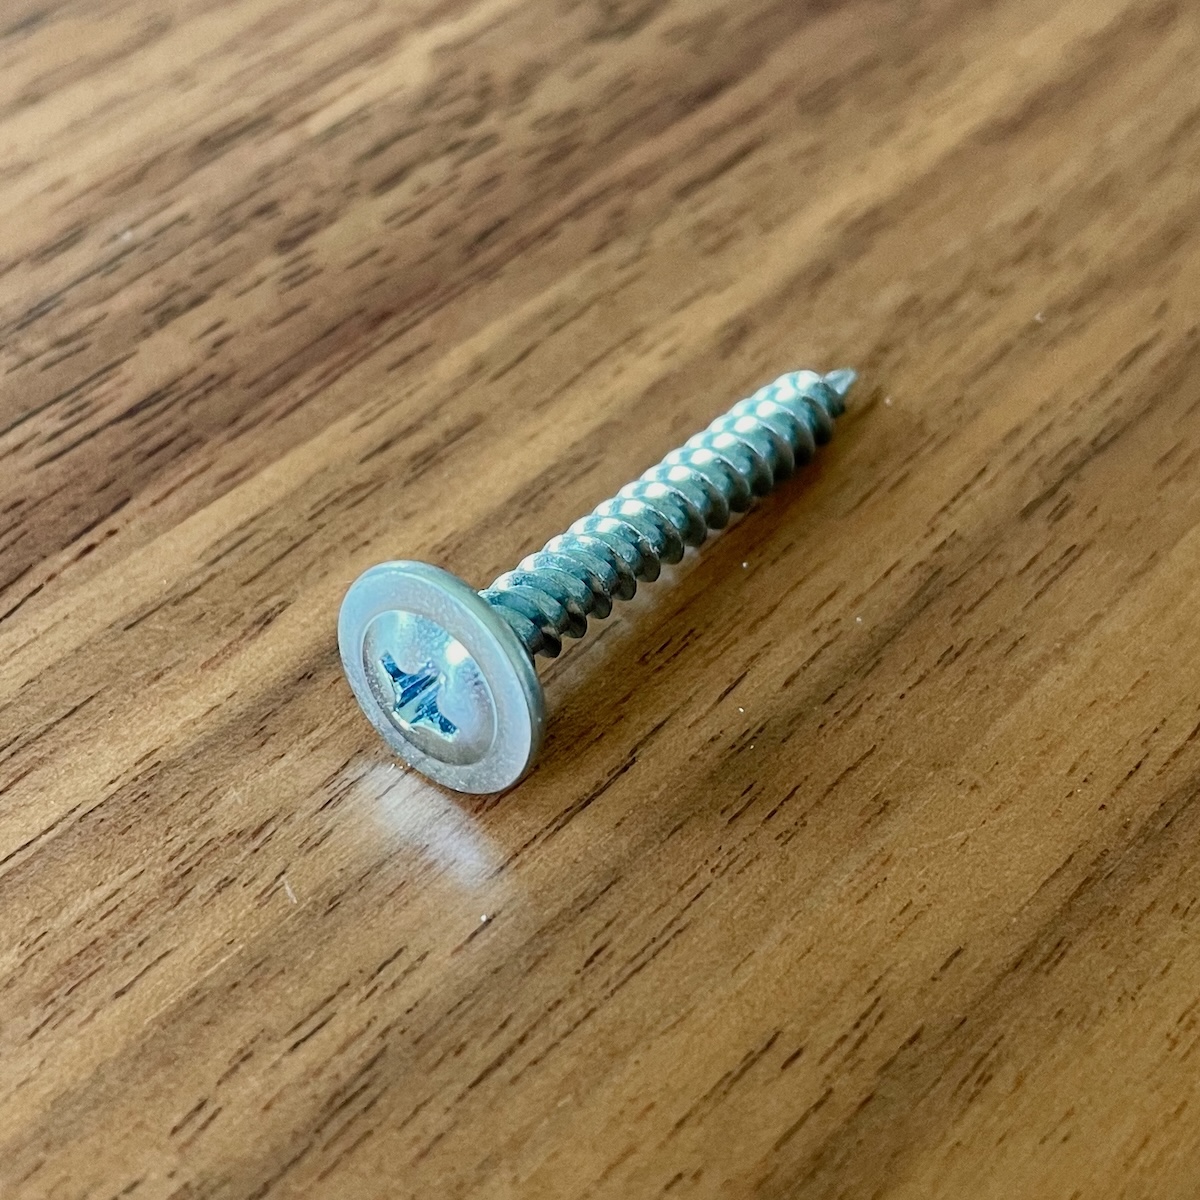 Photo of the screw.